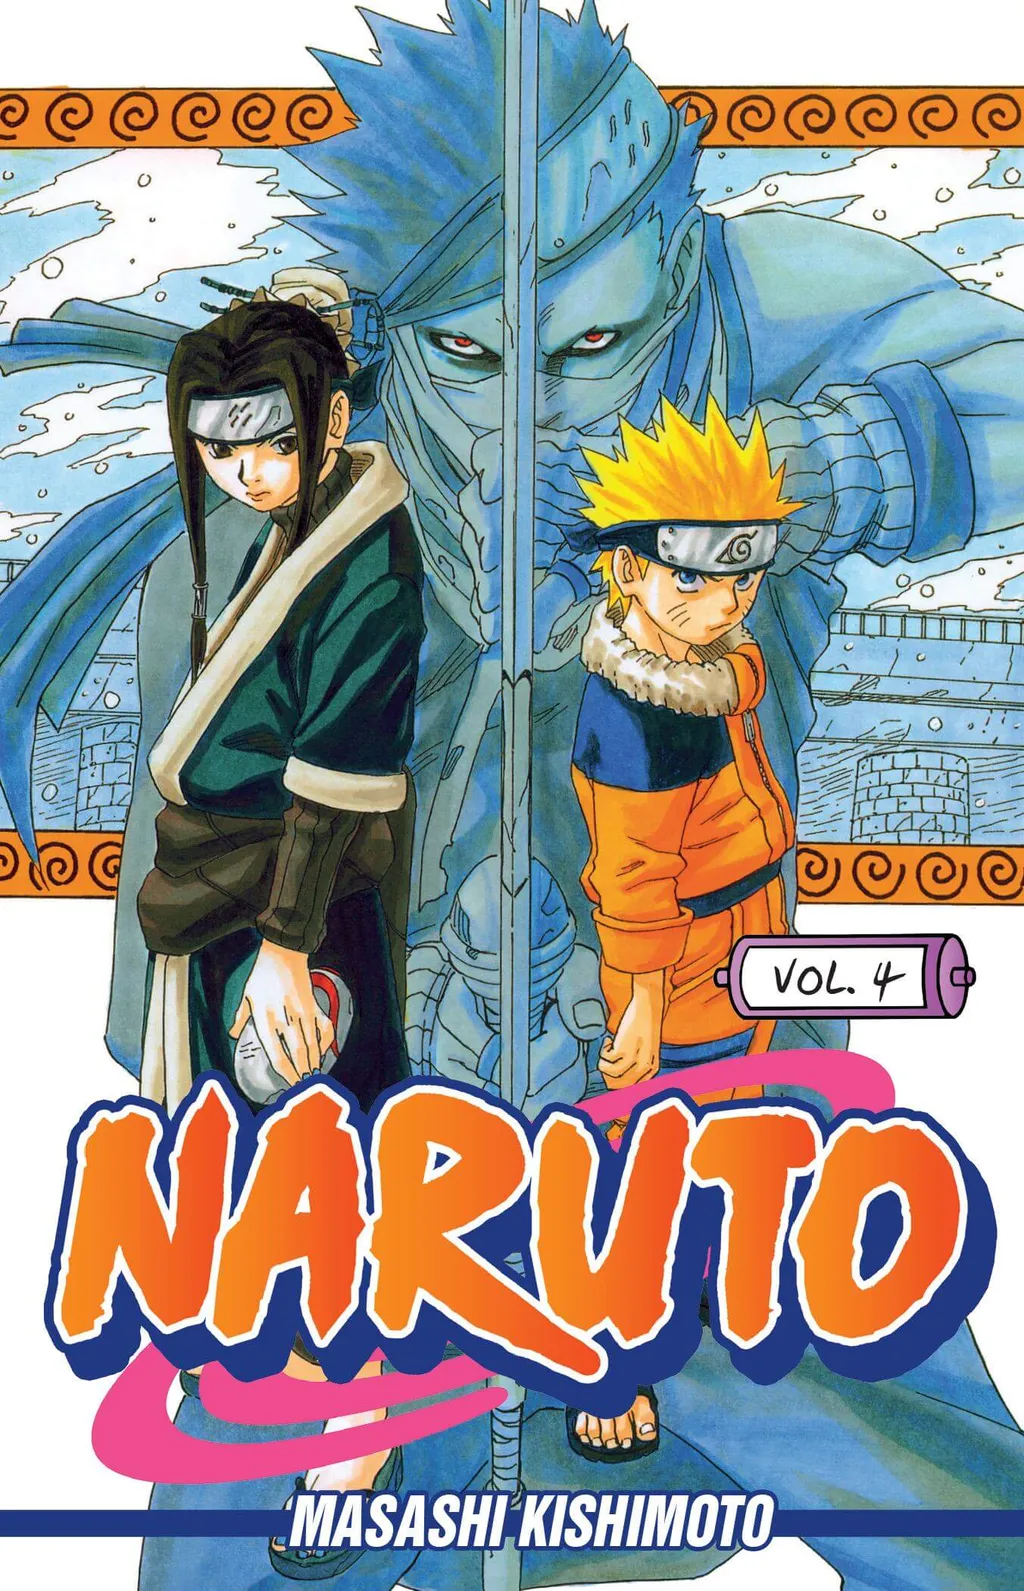 Qual o gênero de Haku em Naruto?